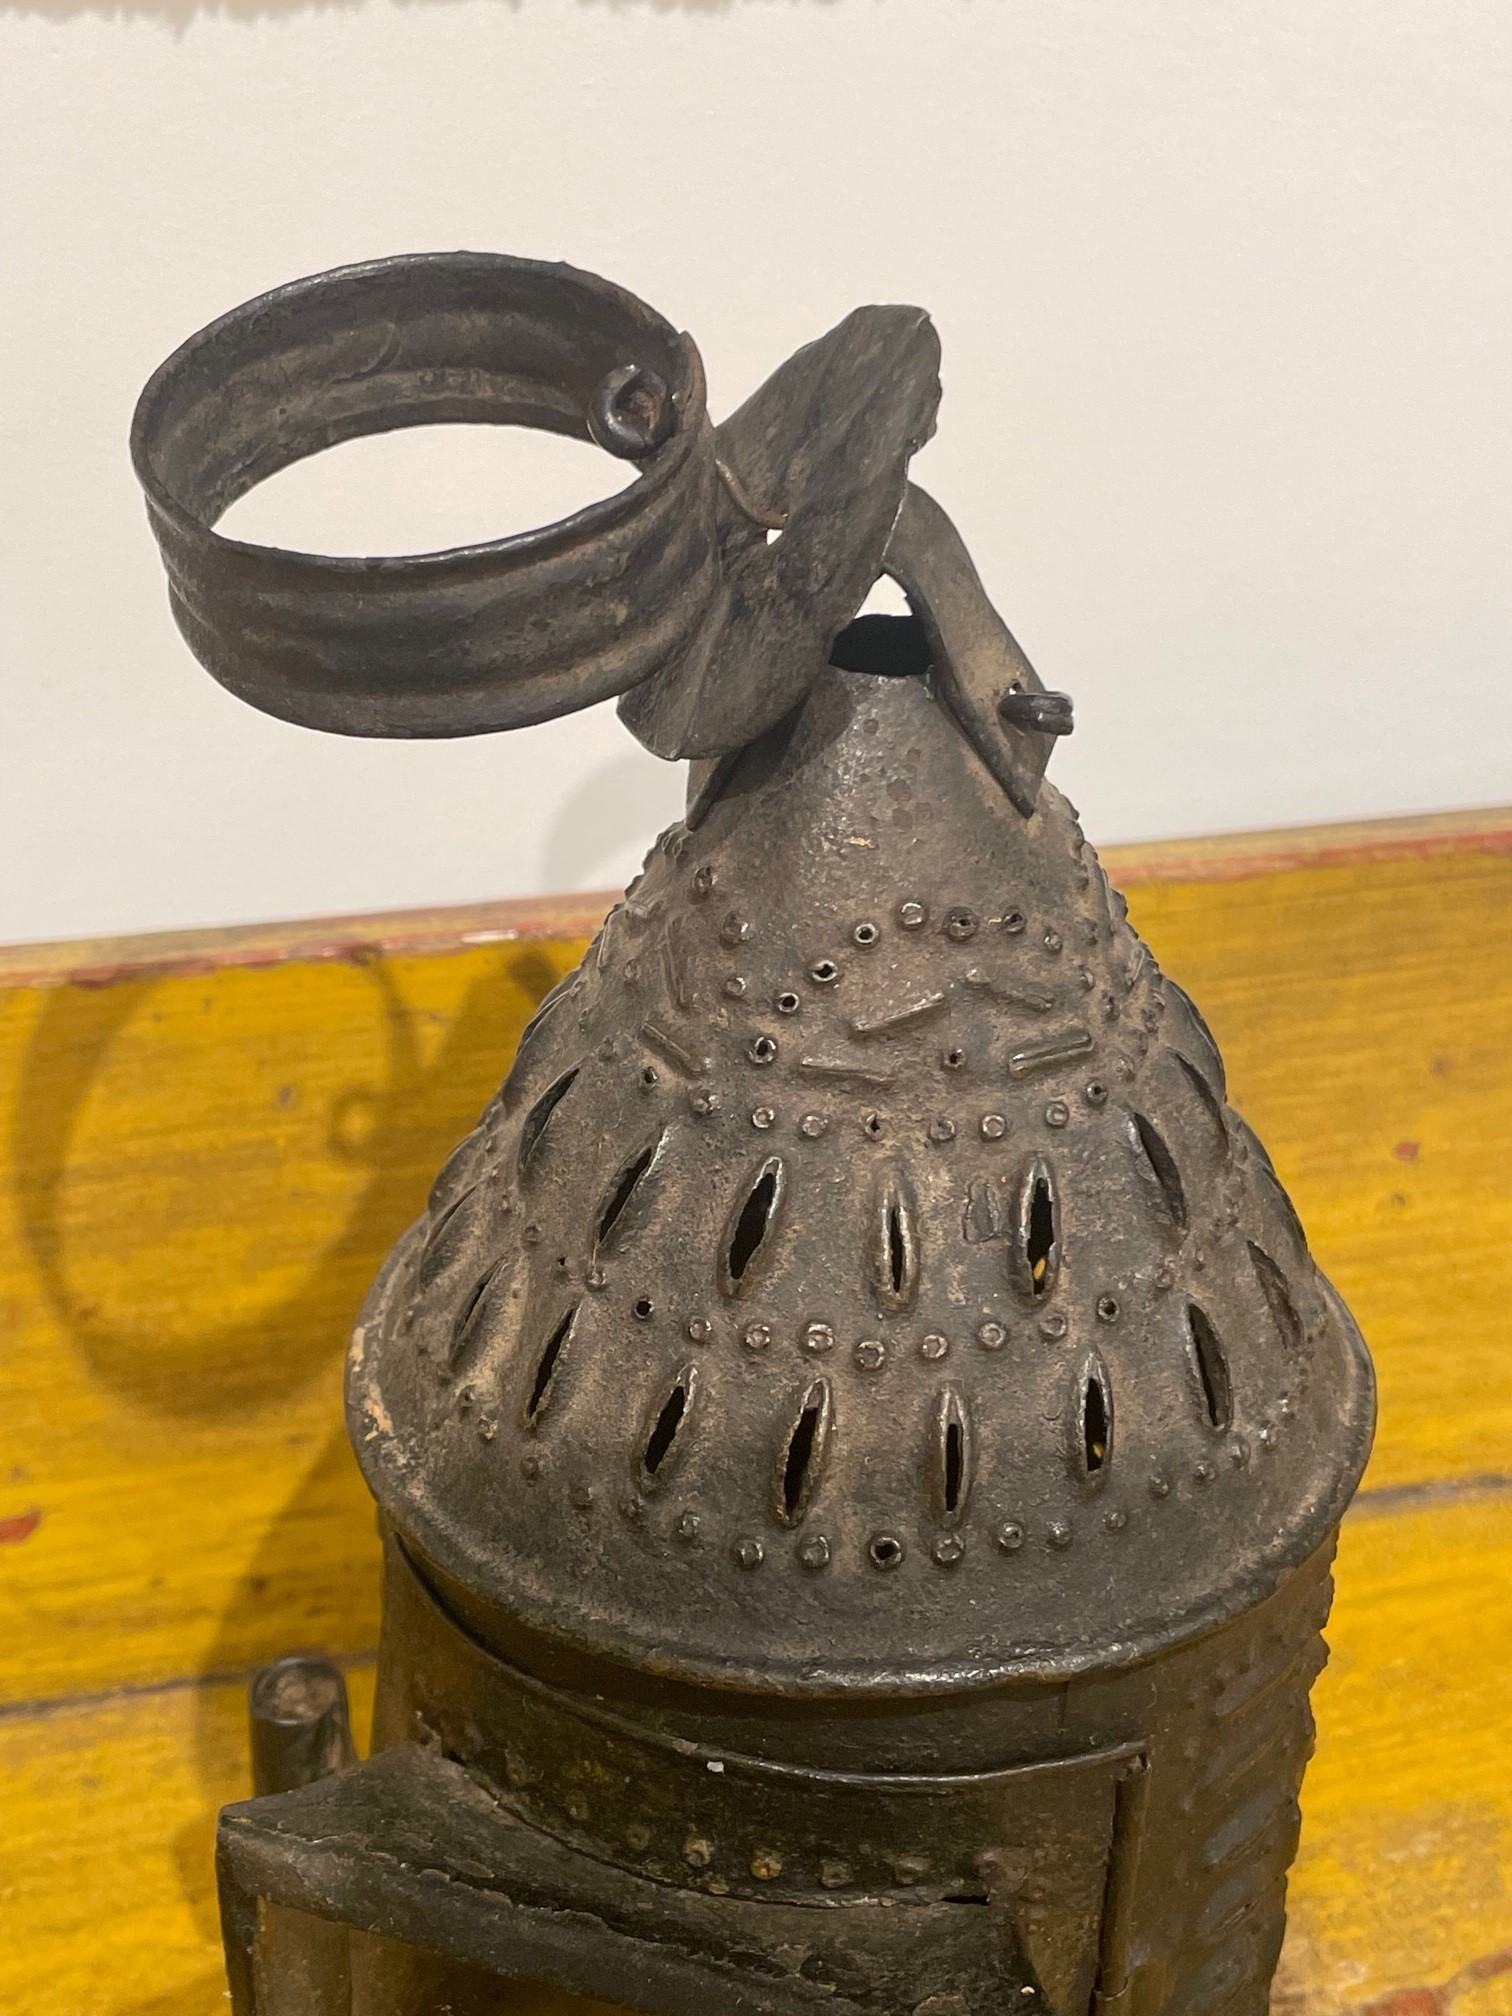 small antique tin lantern rel=